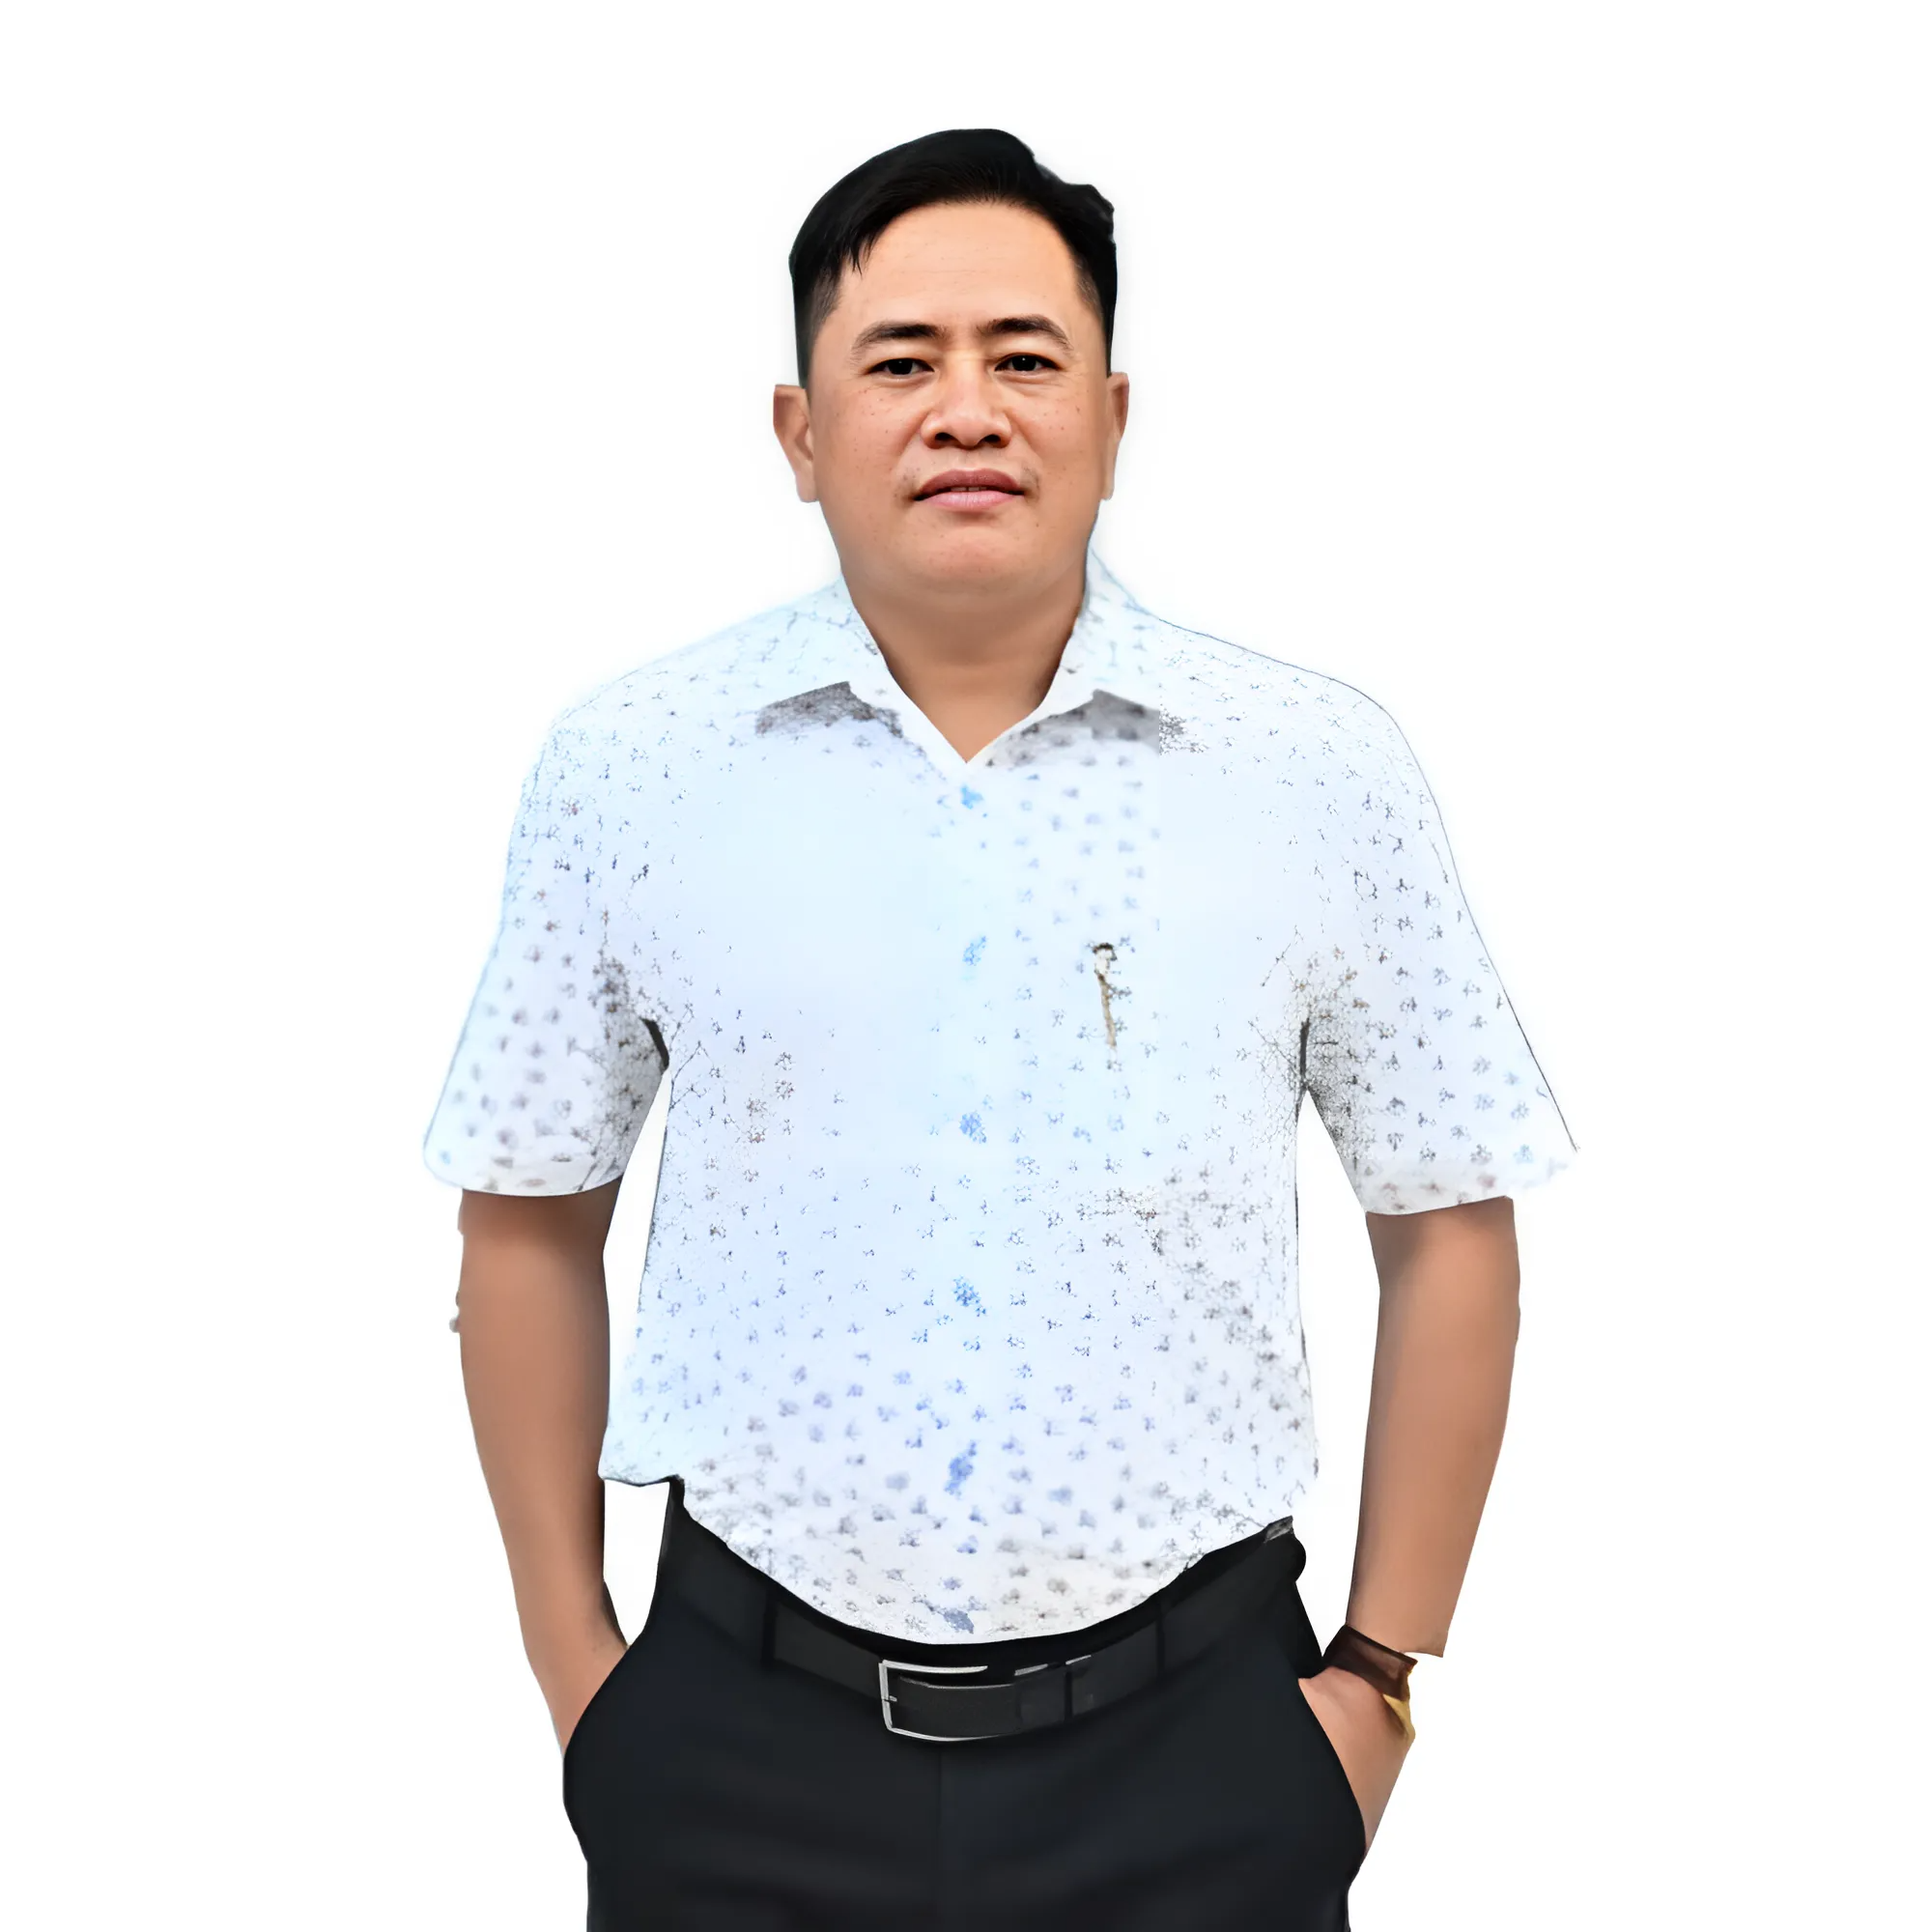 Ông Nguyễn Mạnh Thái